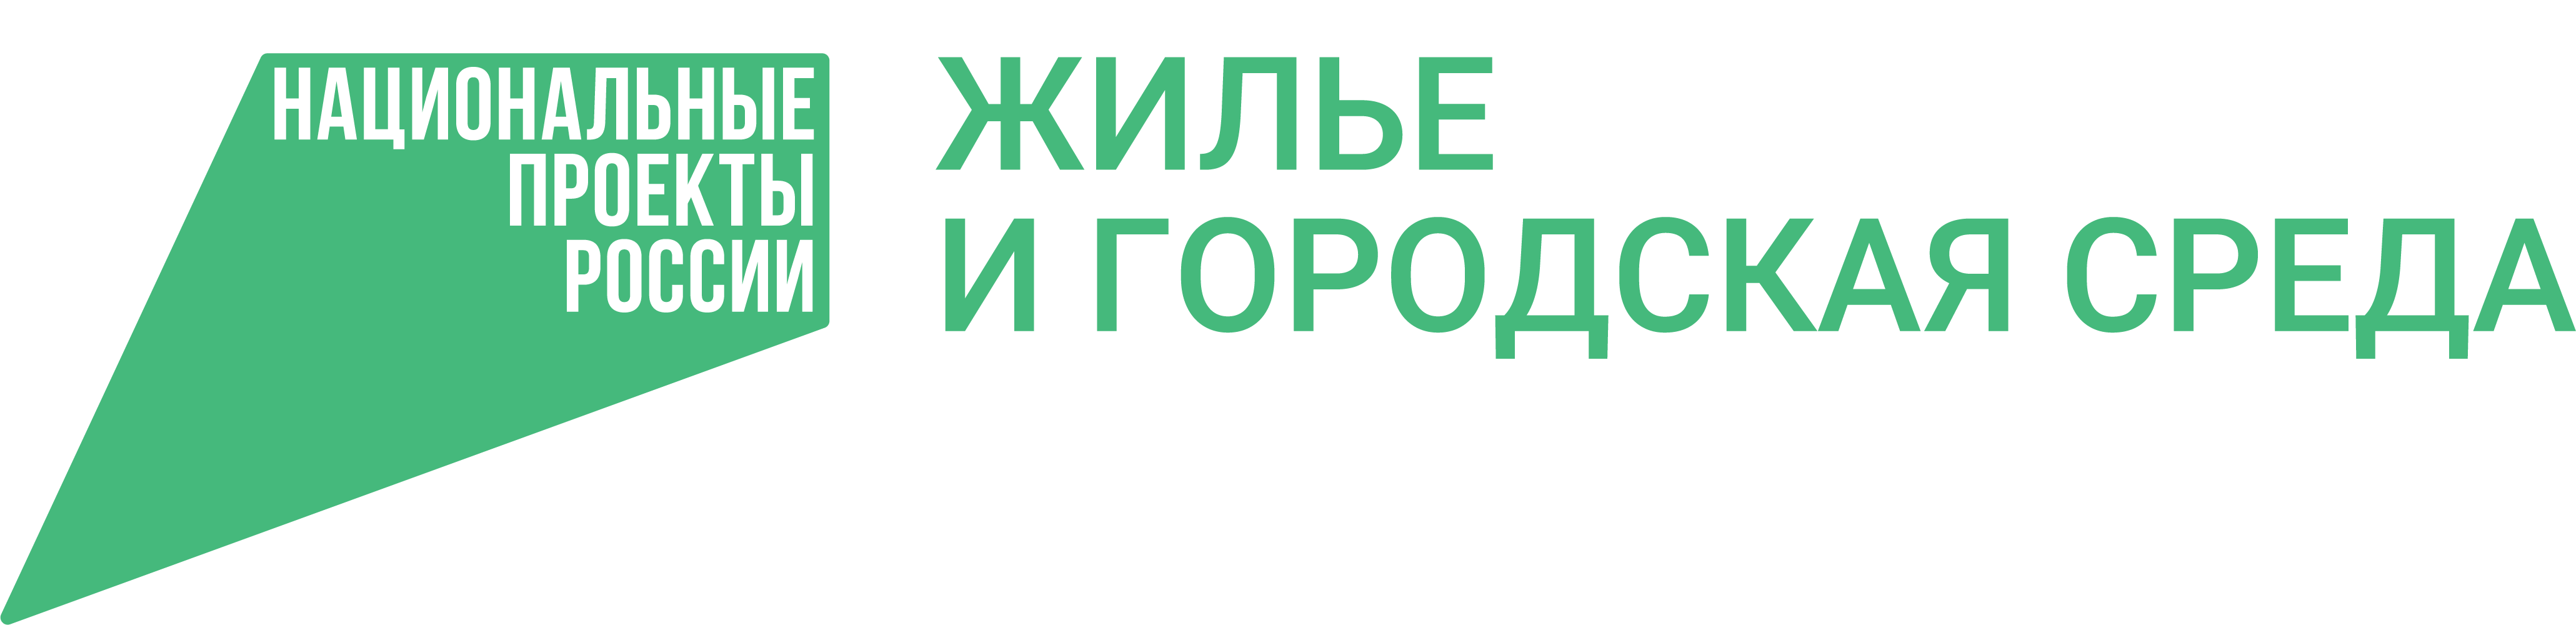 Национальные проекты россии логотип на прозрачном фоне фото